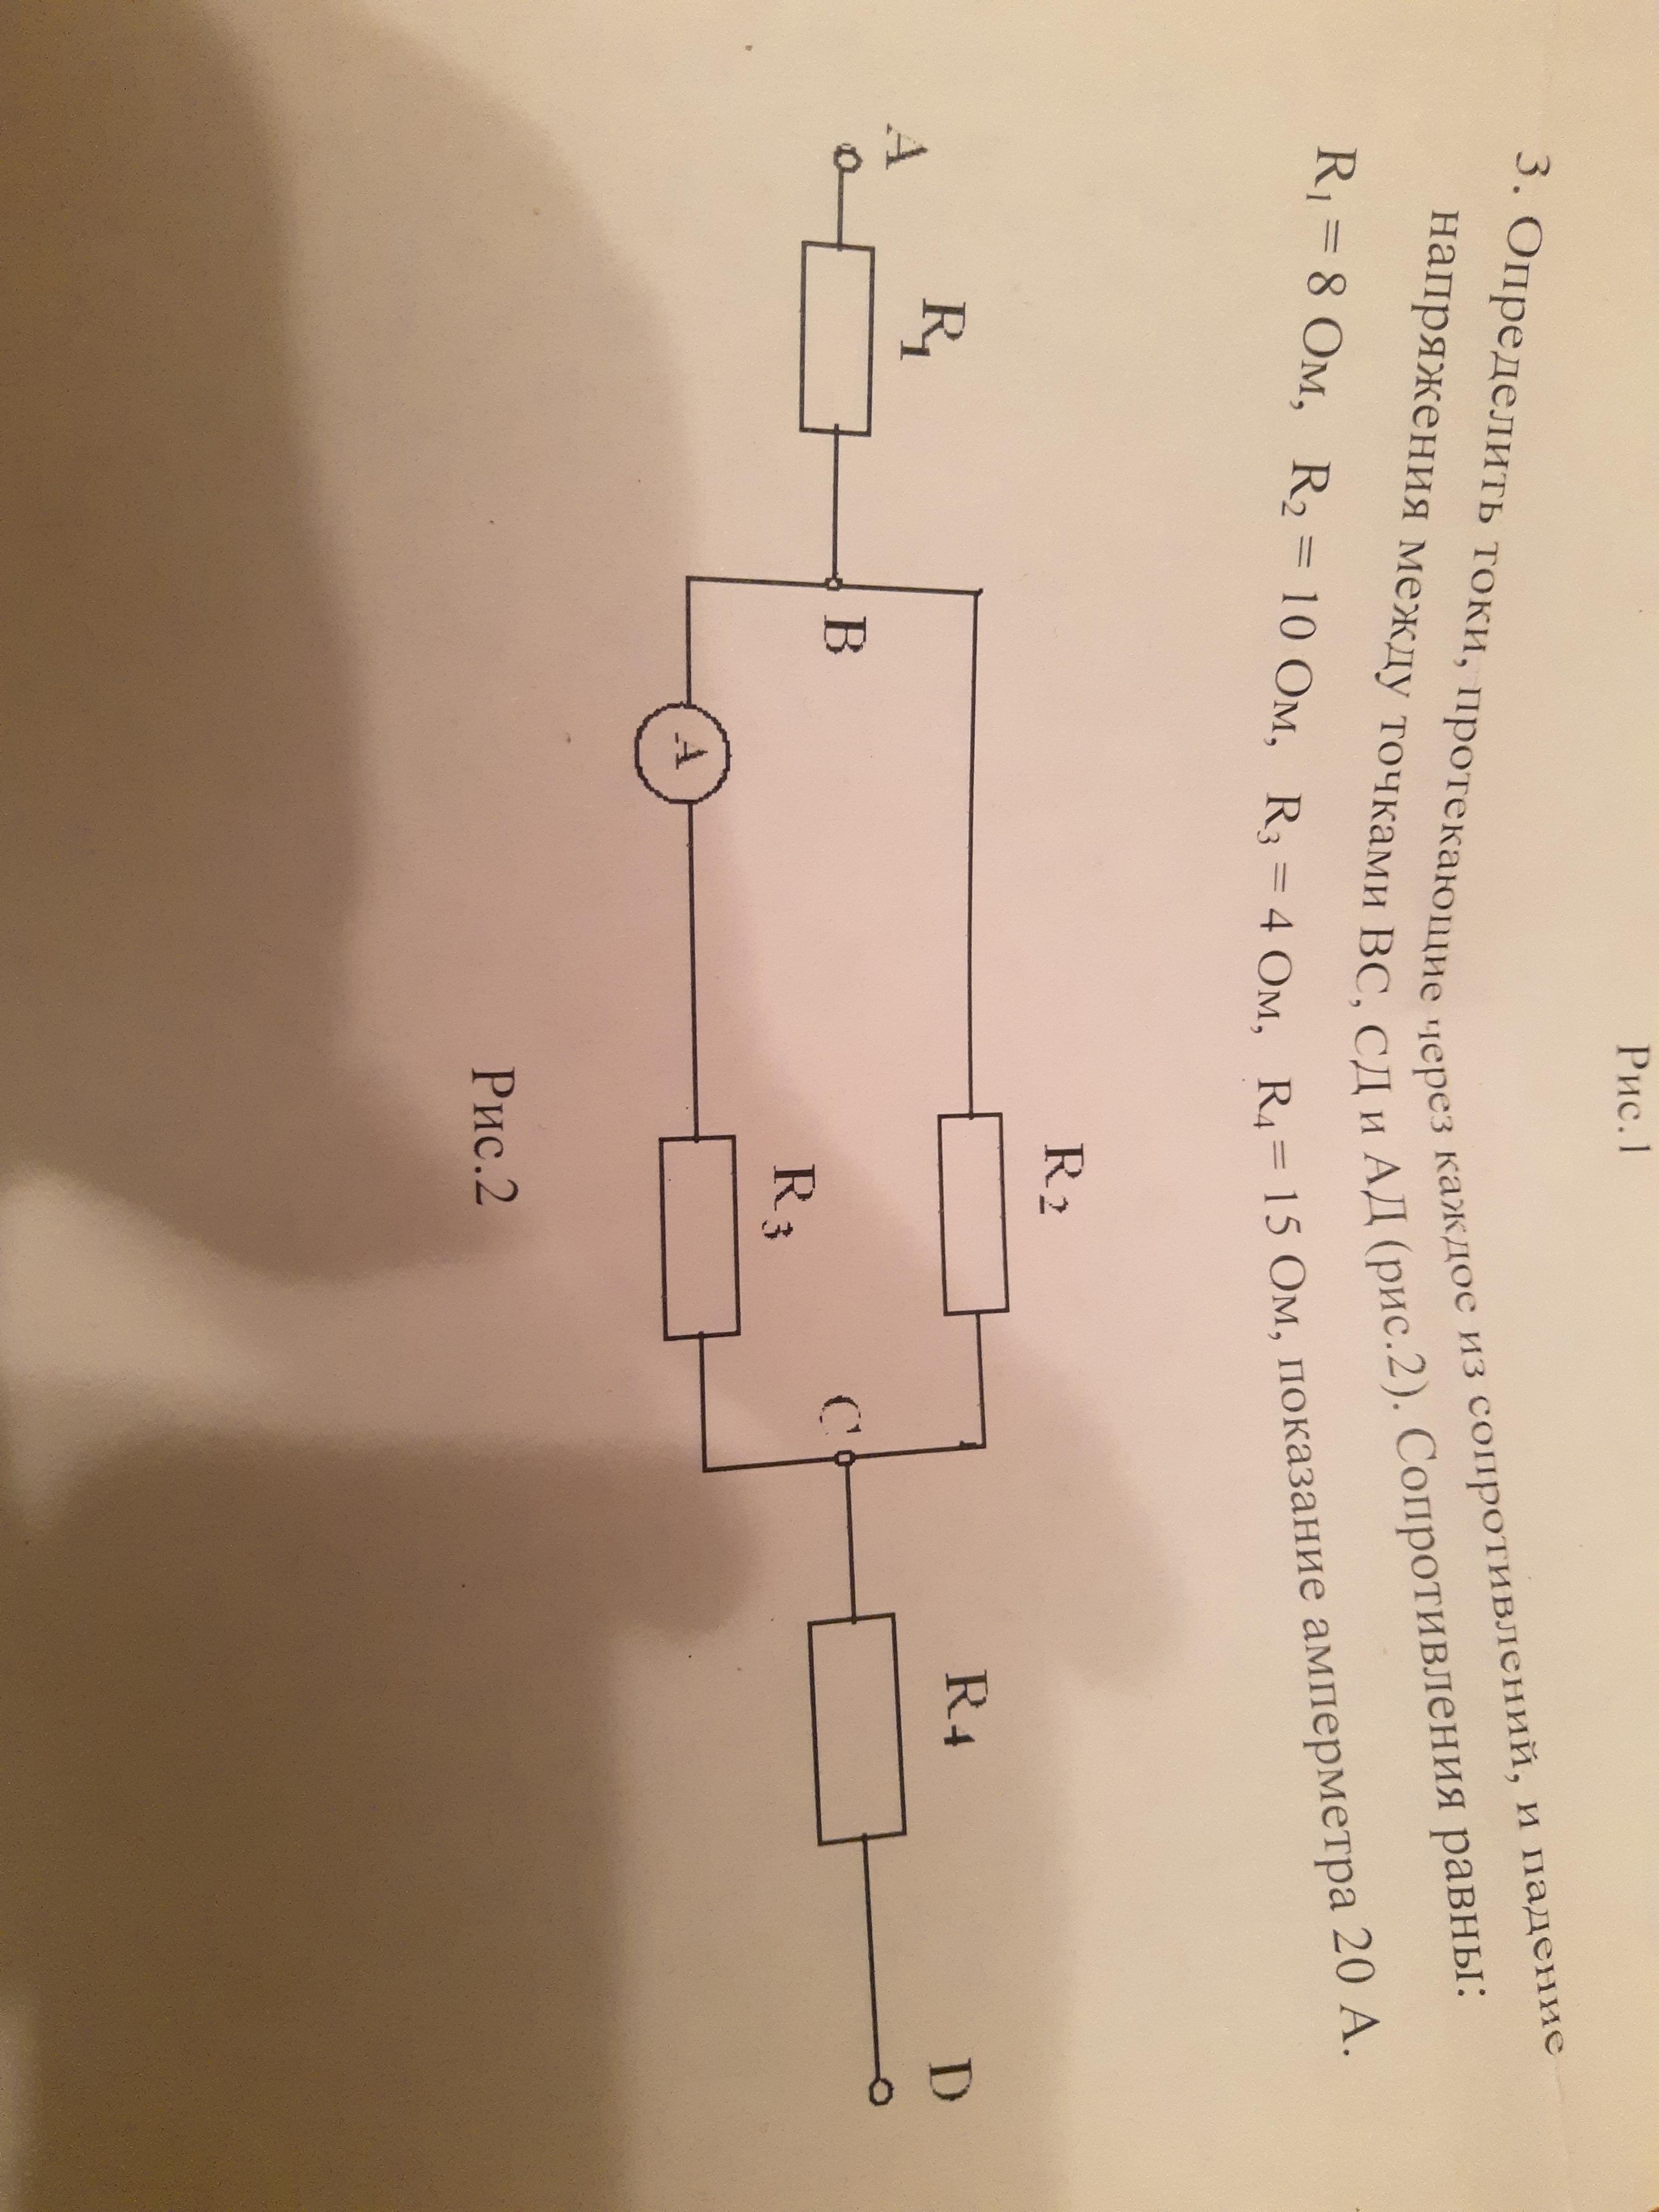 Определите токи протекающие через каждый резистор